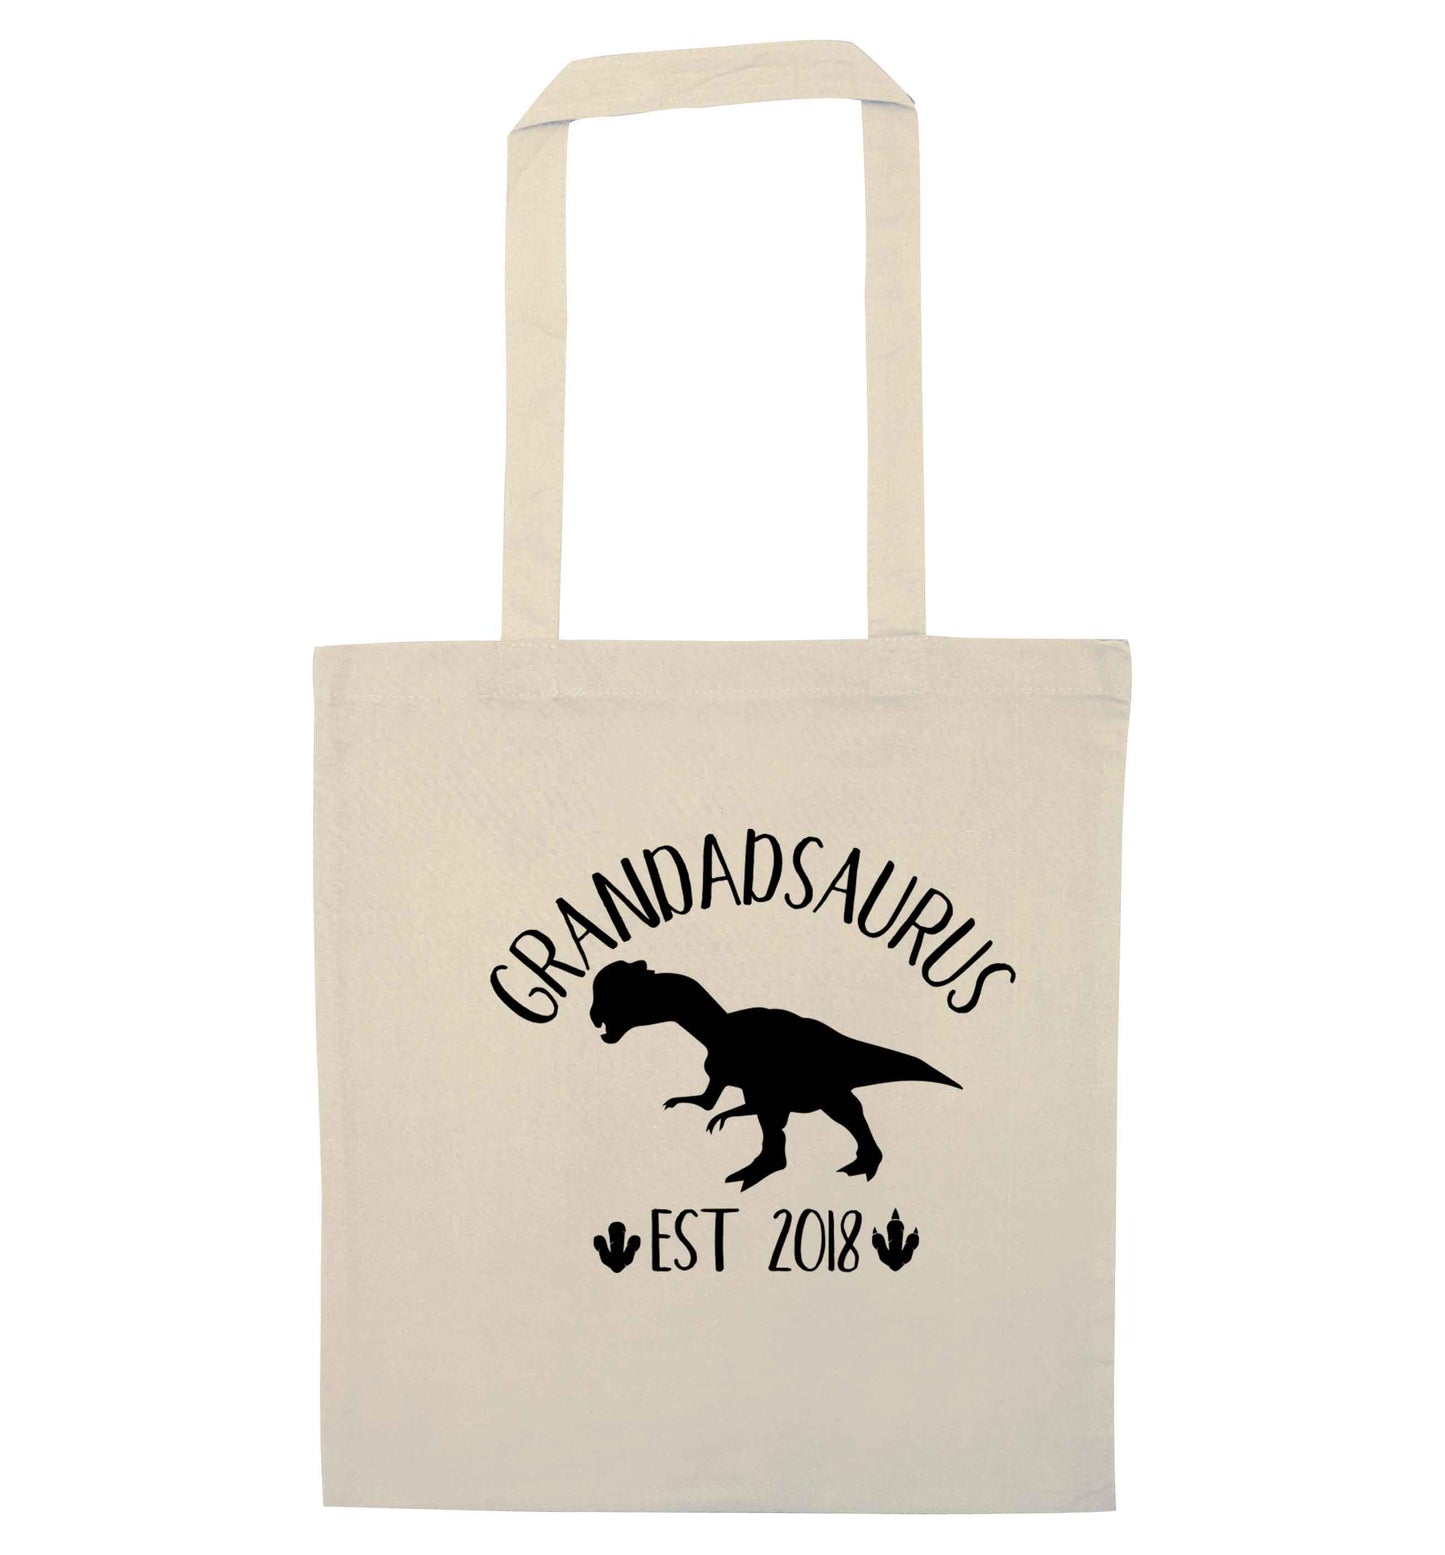 Personalised grandadsaurus since (custom date) natural tote bag